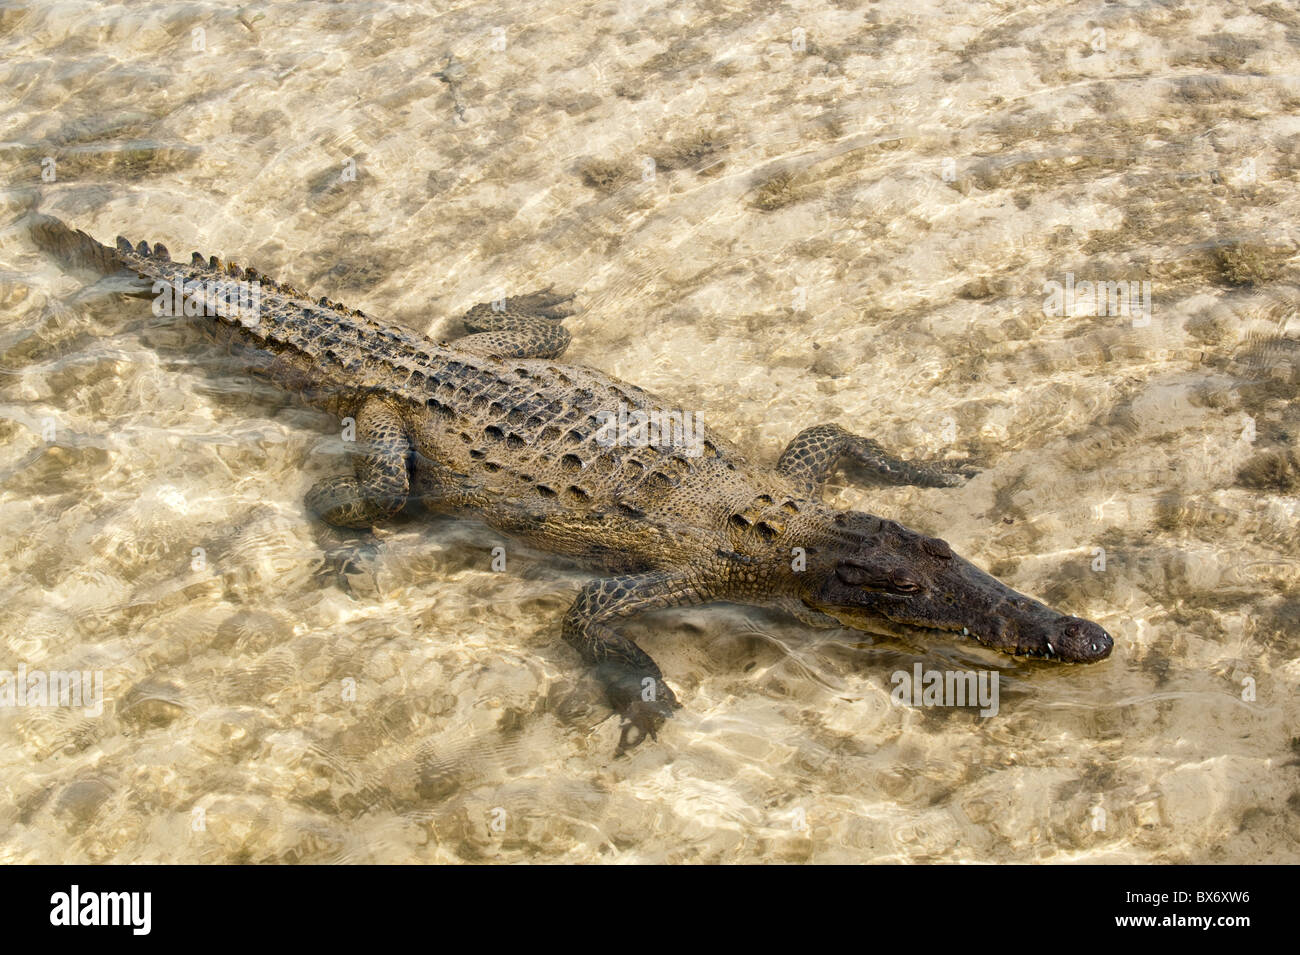 El cocodrilo de agua salada en el Parque Punta Sur, Isla de Cozumel (Cozumel), Isla de Cozumel, frente a la Península de Yucatán, Quintana Roo, México. Foto de stock